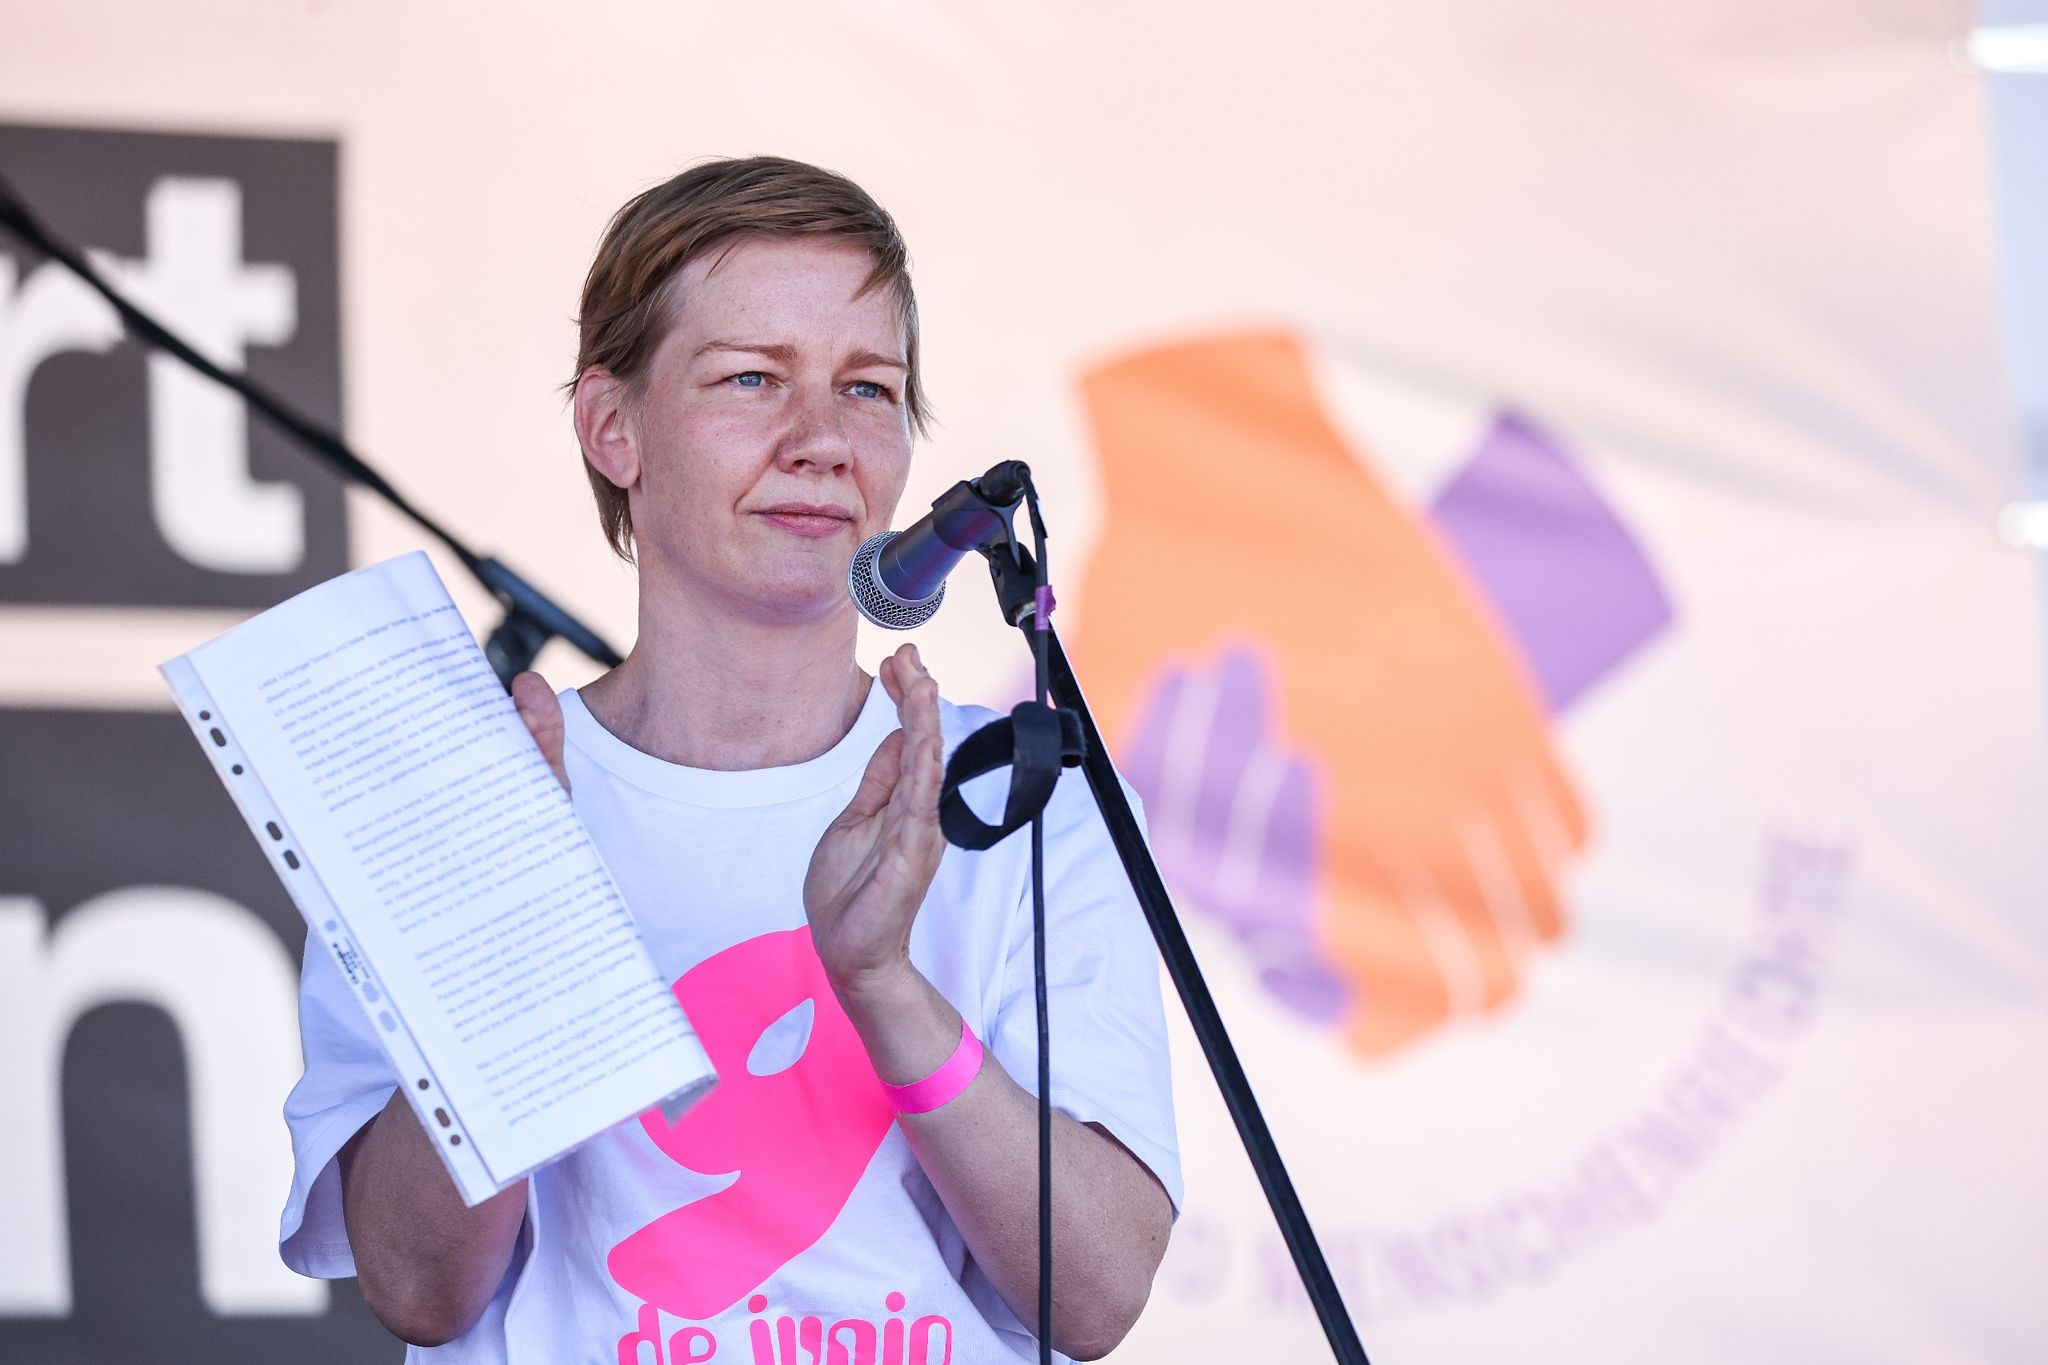 Sandra Hüller bei der Kundgebung «Hand in Hand für Demokratie und Menschenrechte» gegen Rechtsextremismus in Leipzig. Foto: Jan Woitas/dpa